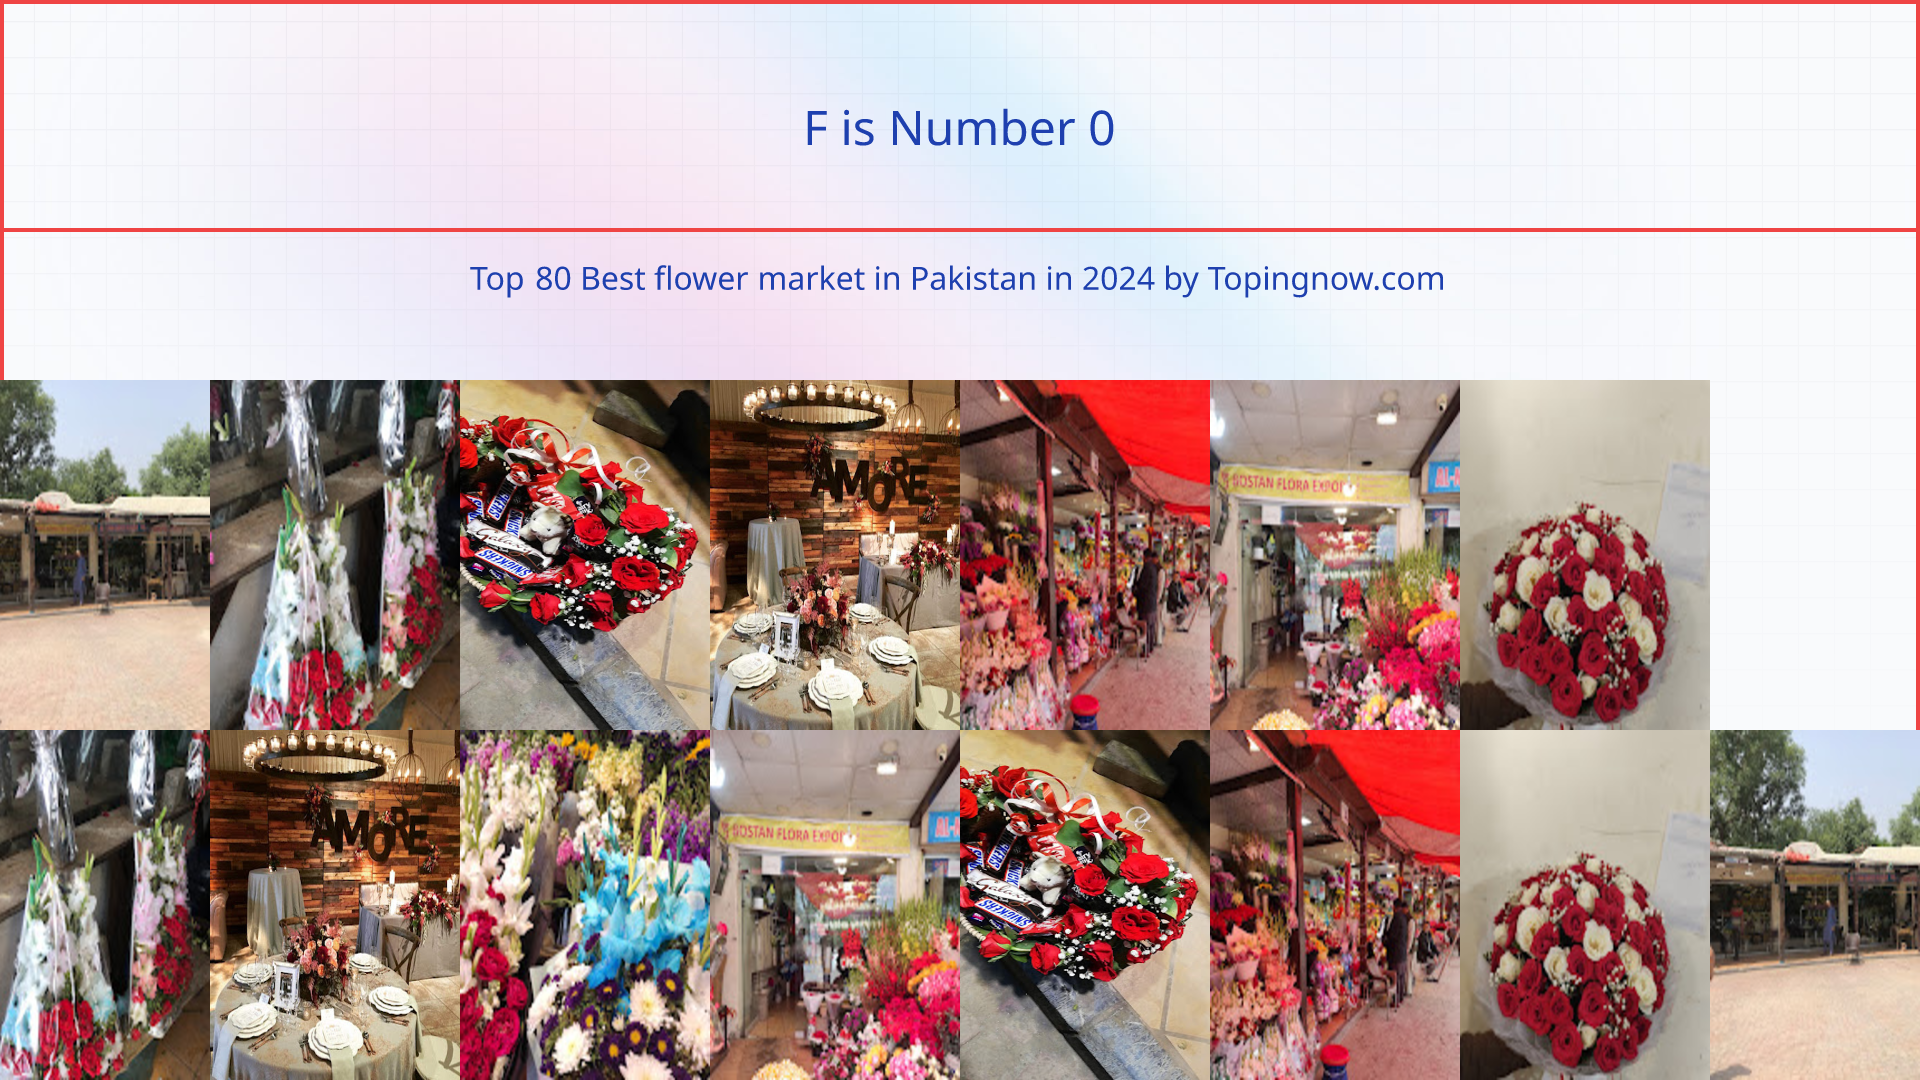 F: Top 80 Best flower market in Pakistan in 2024